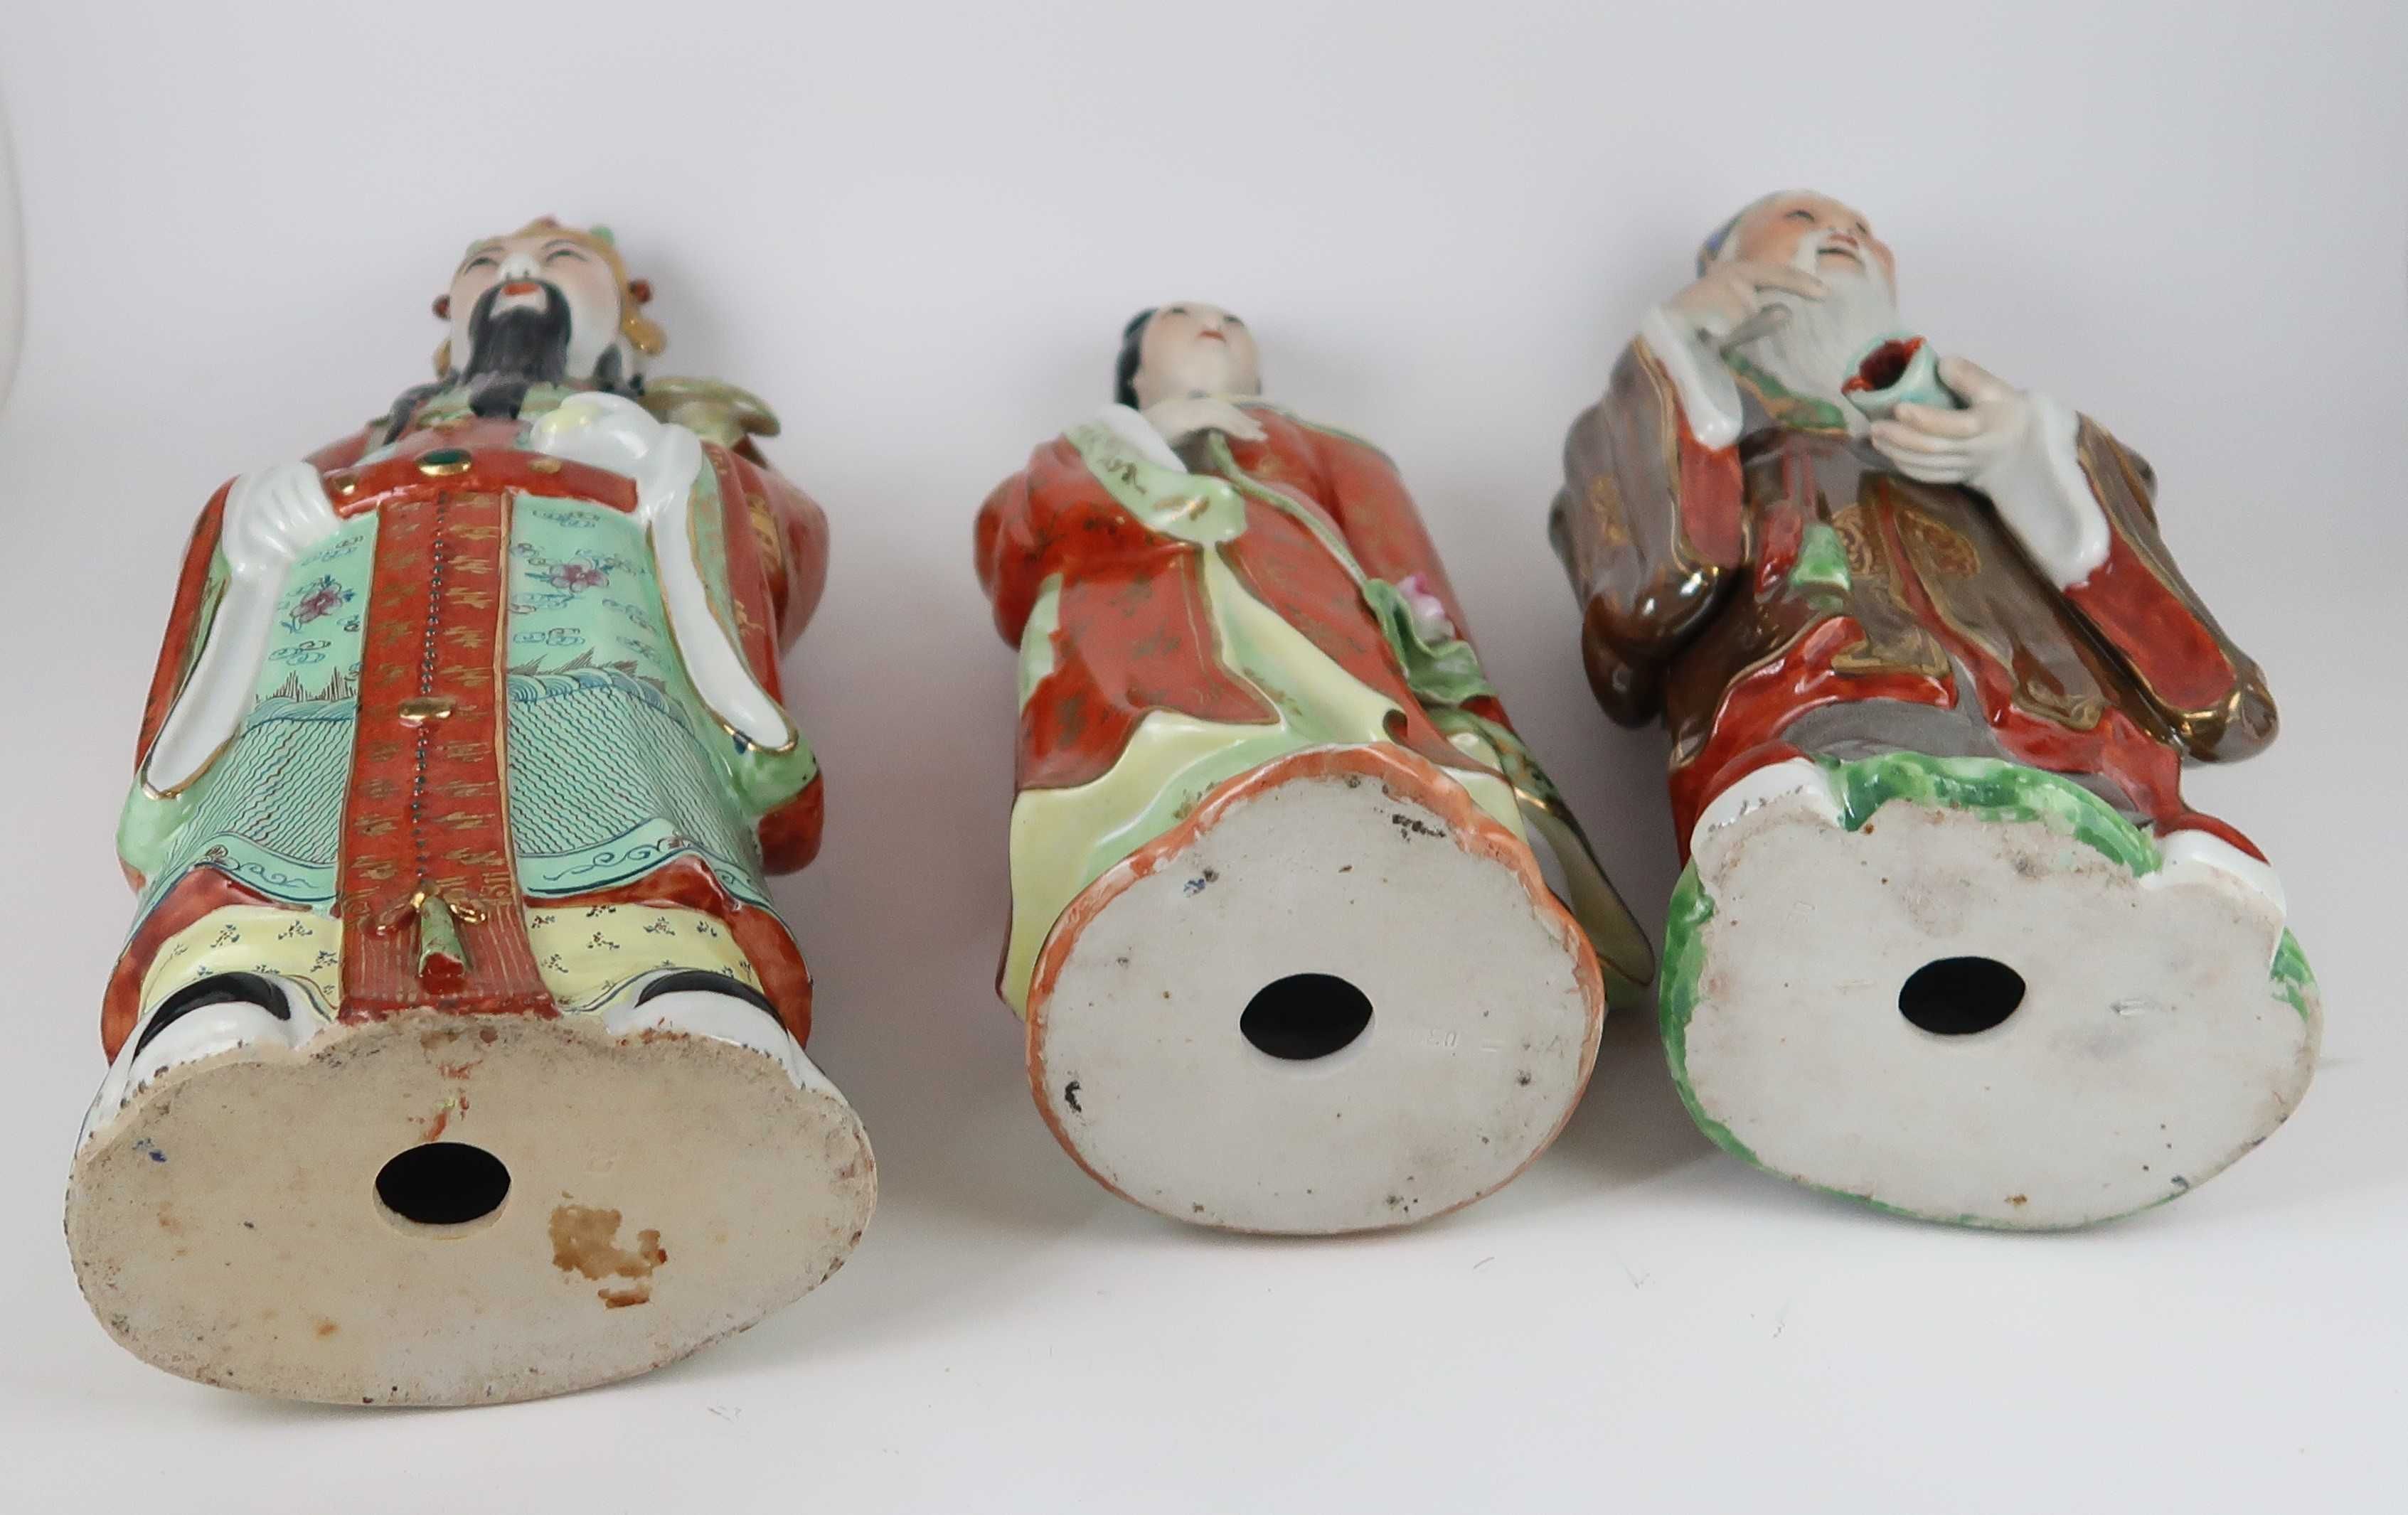 Figuras Esculturas em porcelana da China Grande porte 38 cm, cada